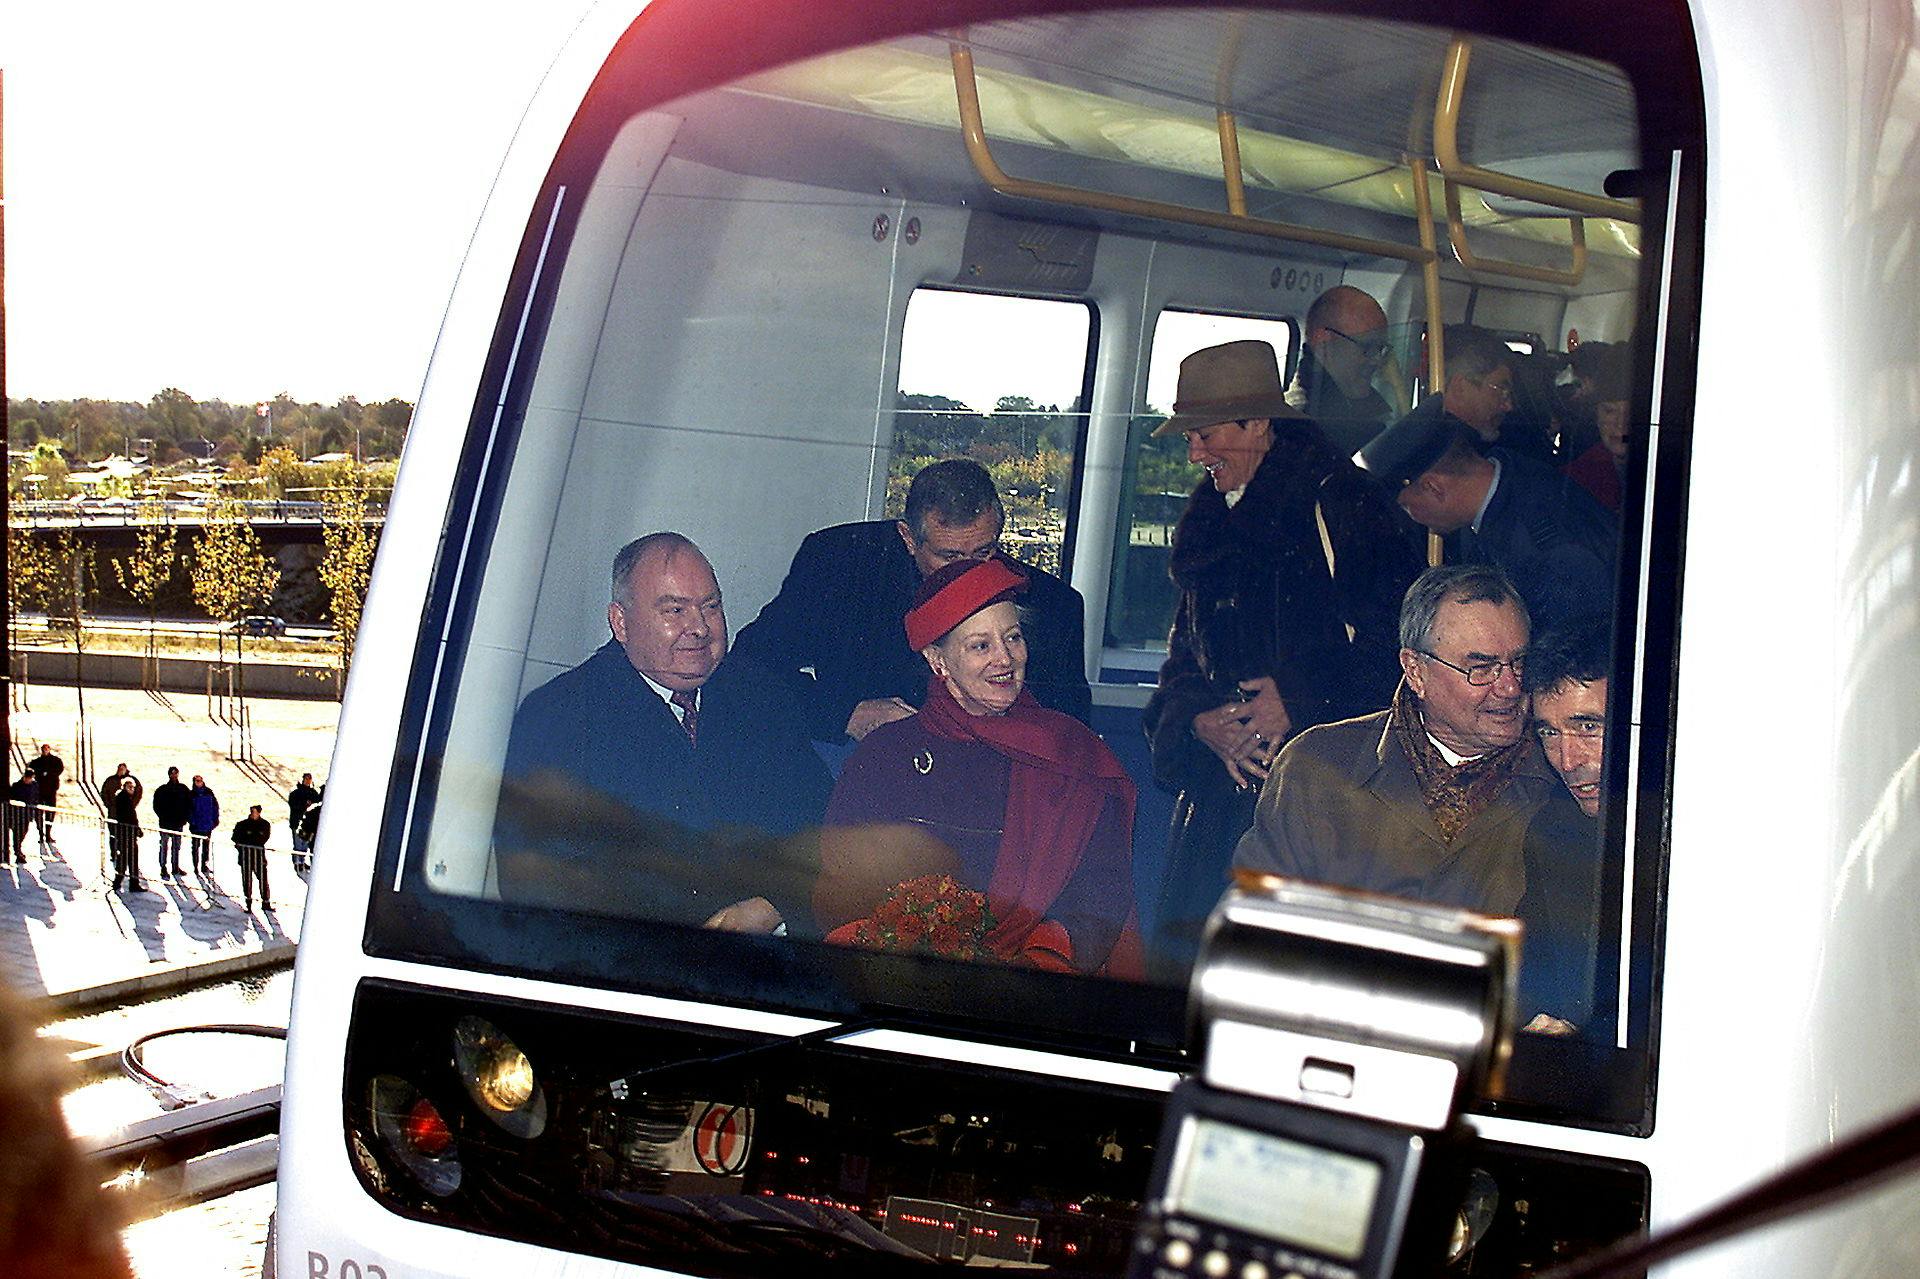 Så kører vi, Daisy. Dronning Margrethe og Prins Henrik var med på Metroens jomfrutur lørdagen for præcis 20 år siden. Til højre titter daværende statsminister Anders Fogh Rasmussen frem.